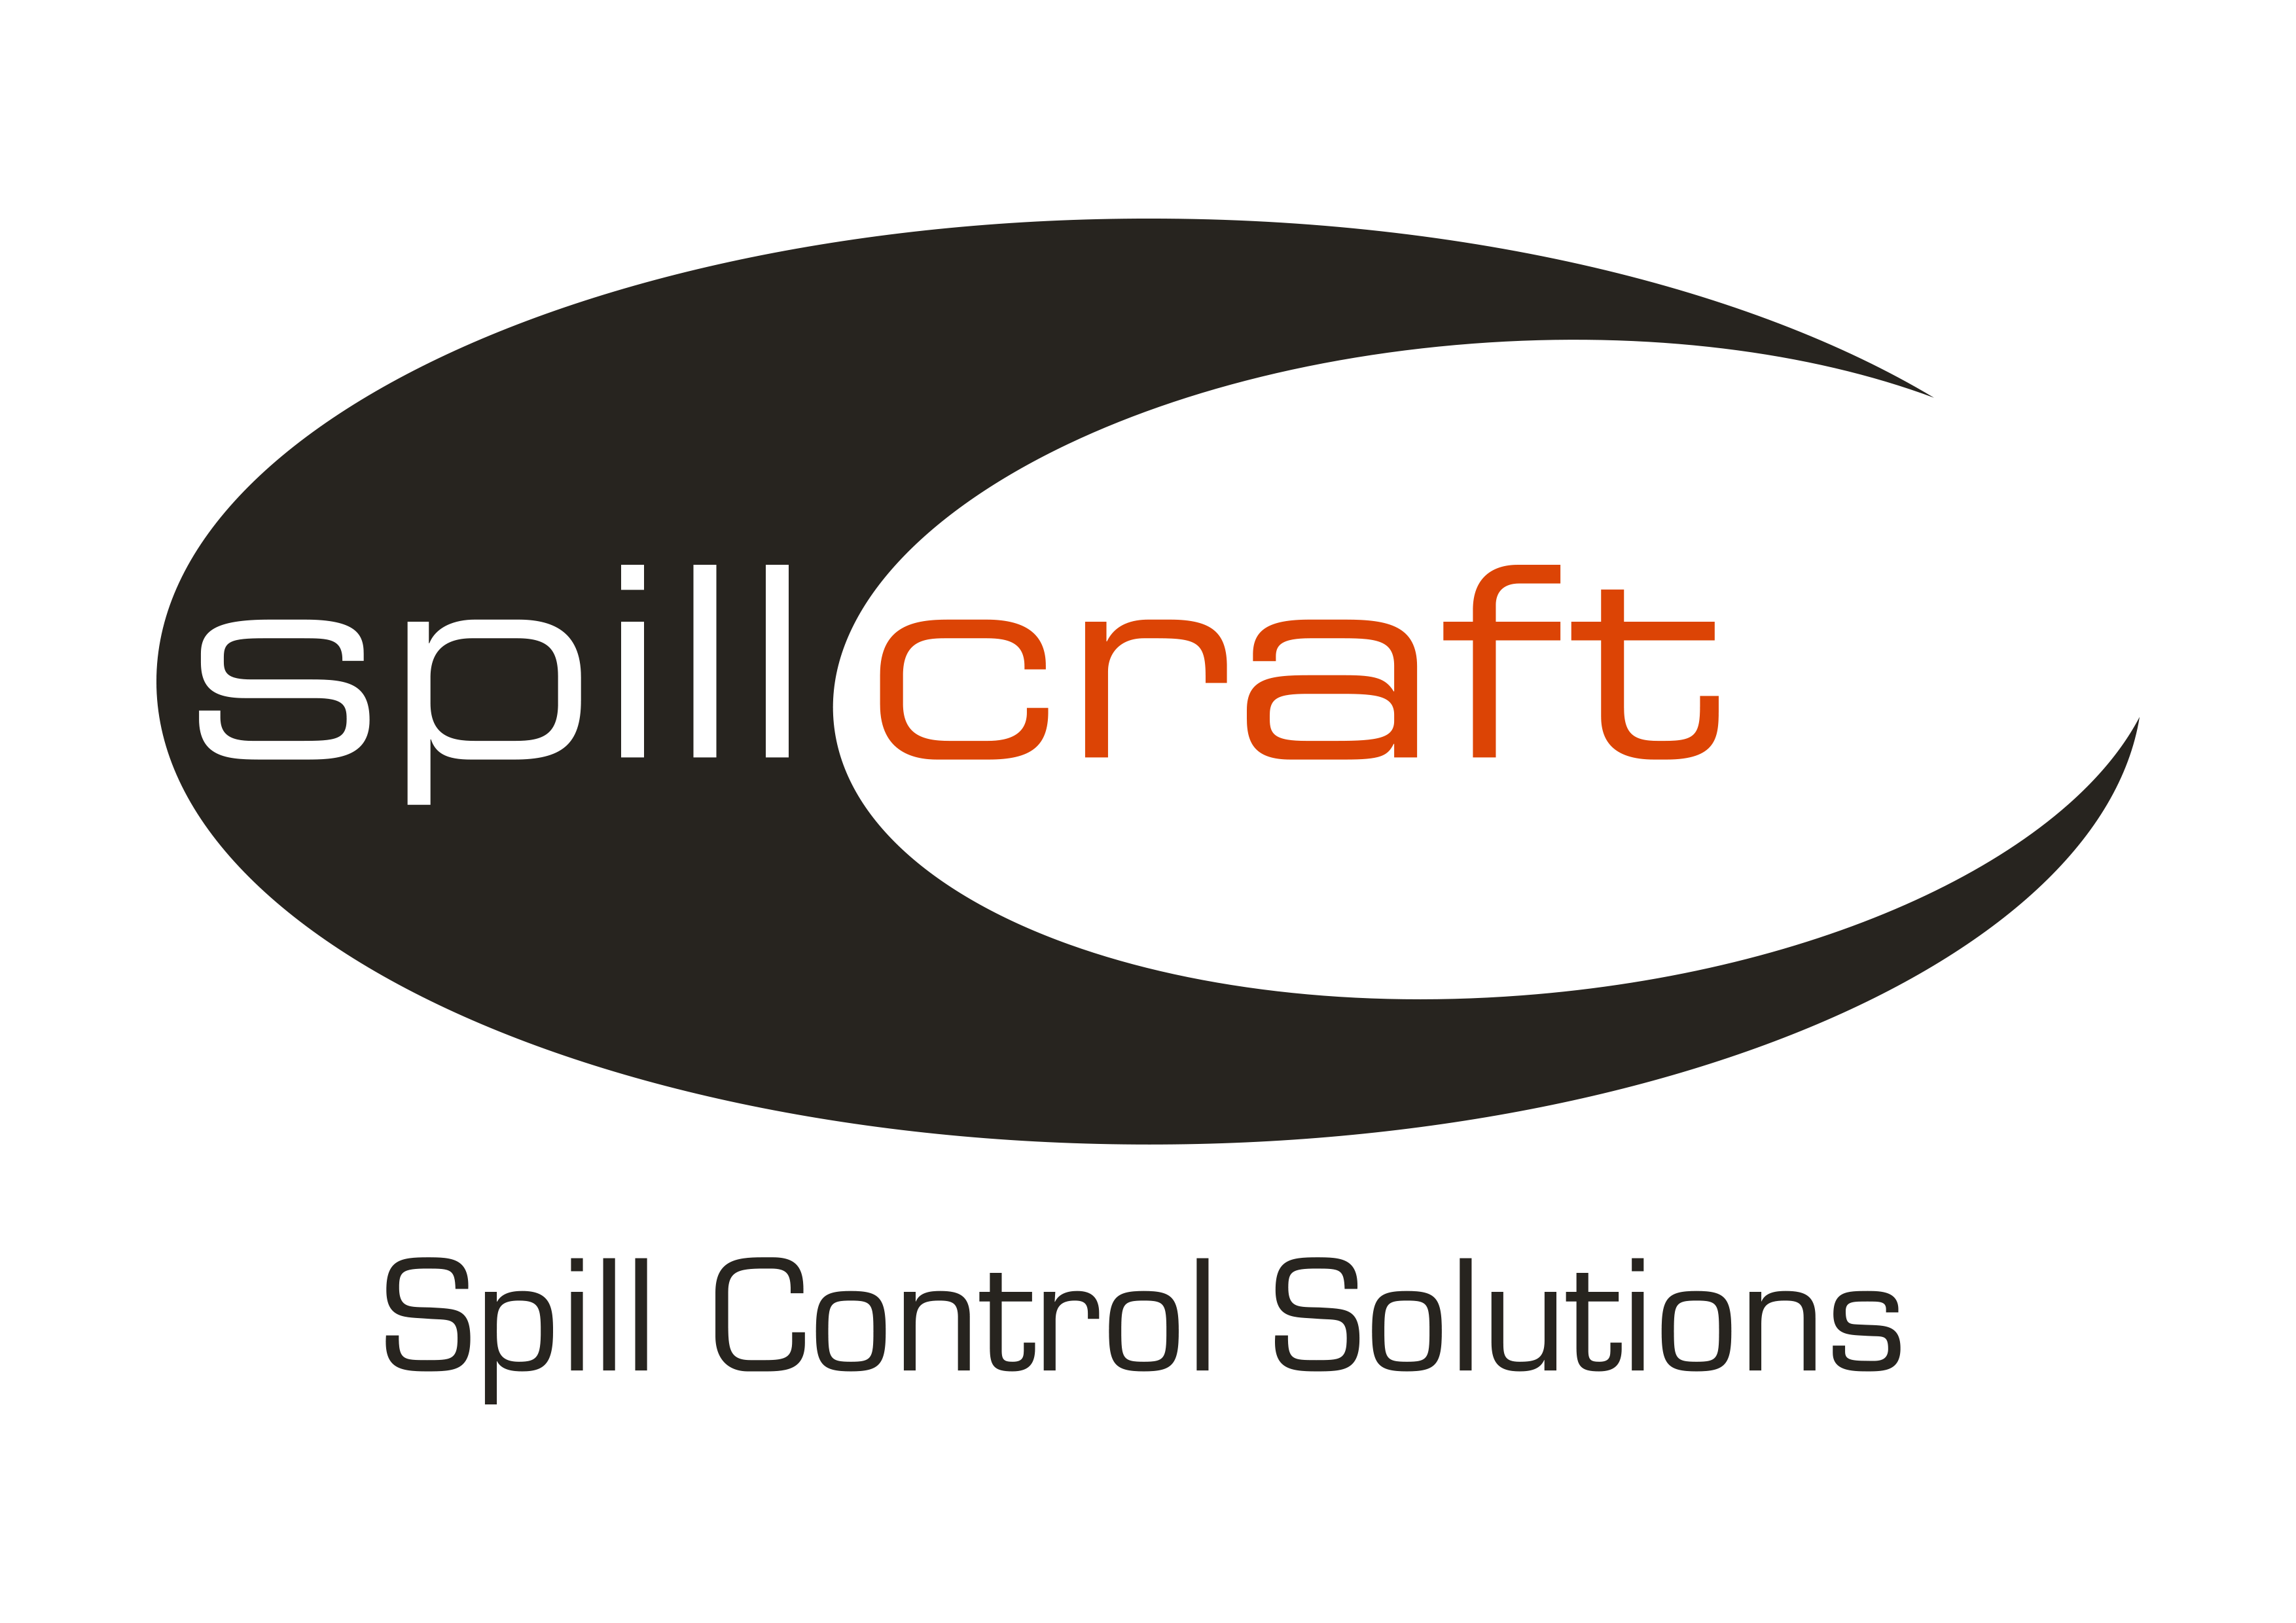 Spill Craft